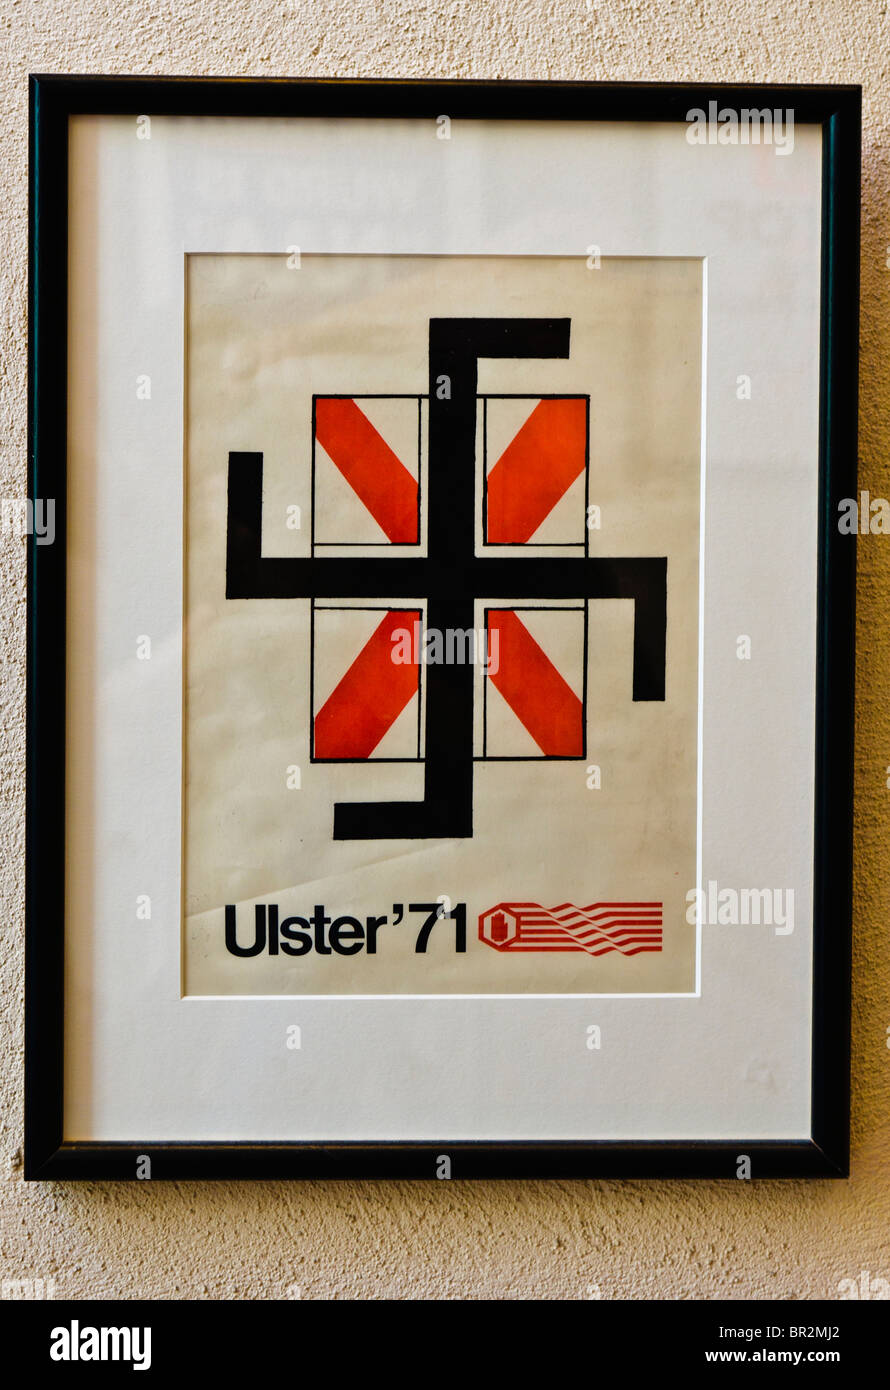 Ulster '71 poster che ha suggerito che il festival, dovrebbe essere una celebrazione dell'Irlanda del Nord, promosso ideali fascista emarginando i Cattolici Foto Stock